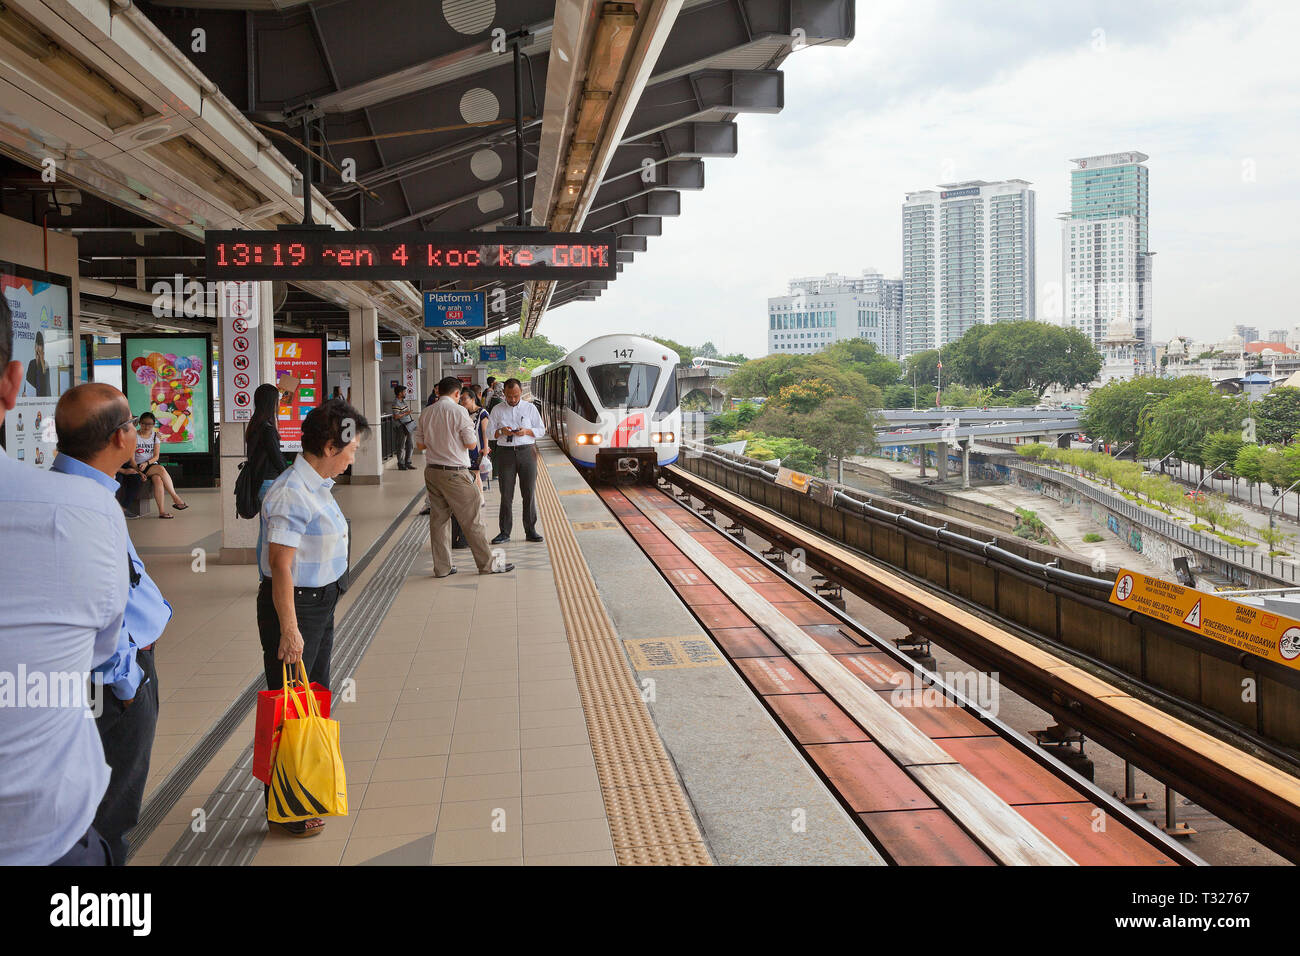 Kuala Lumpur, Malesia, Rapid KL Light Railway, trasporto in treno arrivando alla stazione di " commuters " piattaforma, pendolari in attesa di bordo. Foto Stock